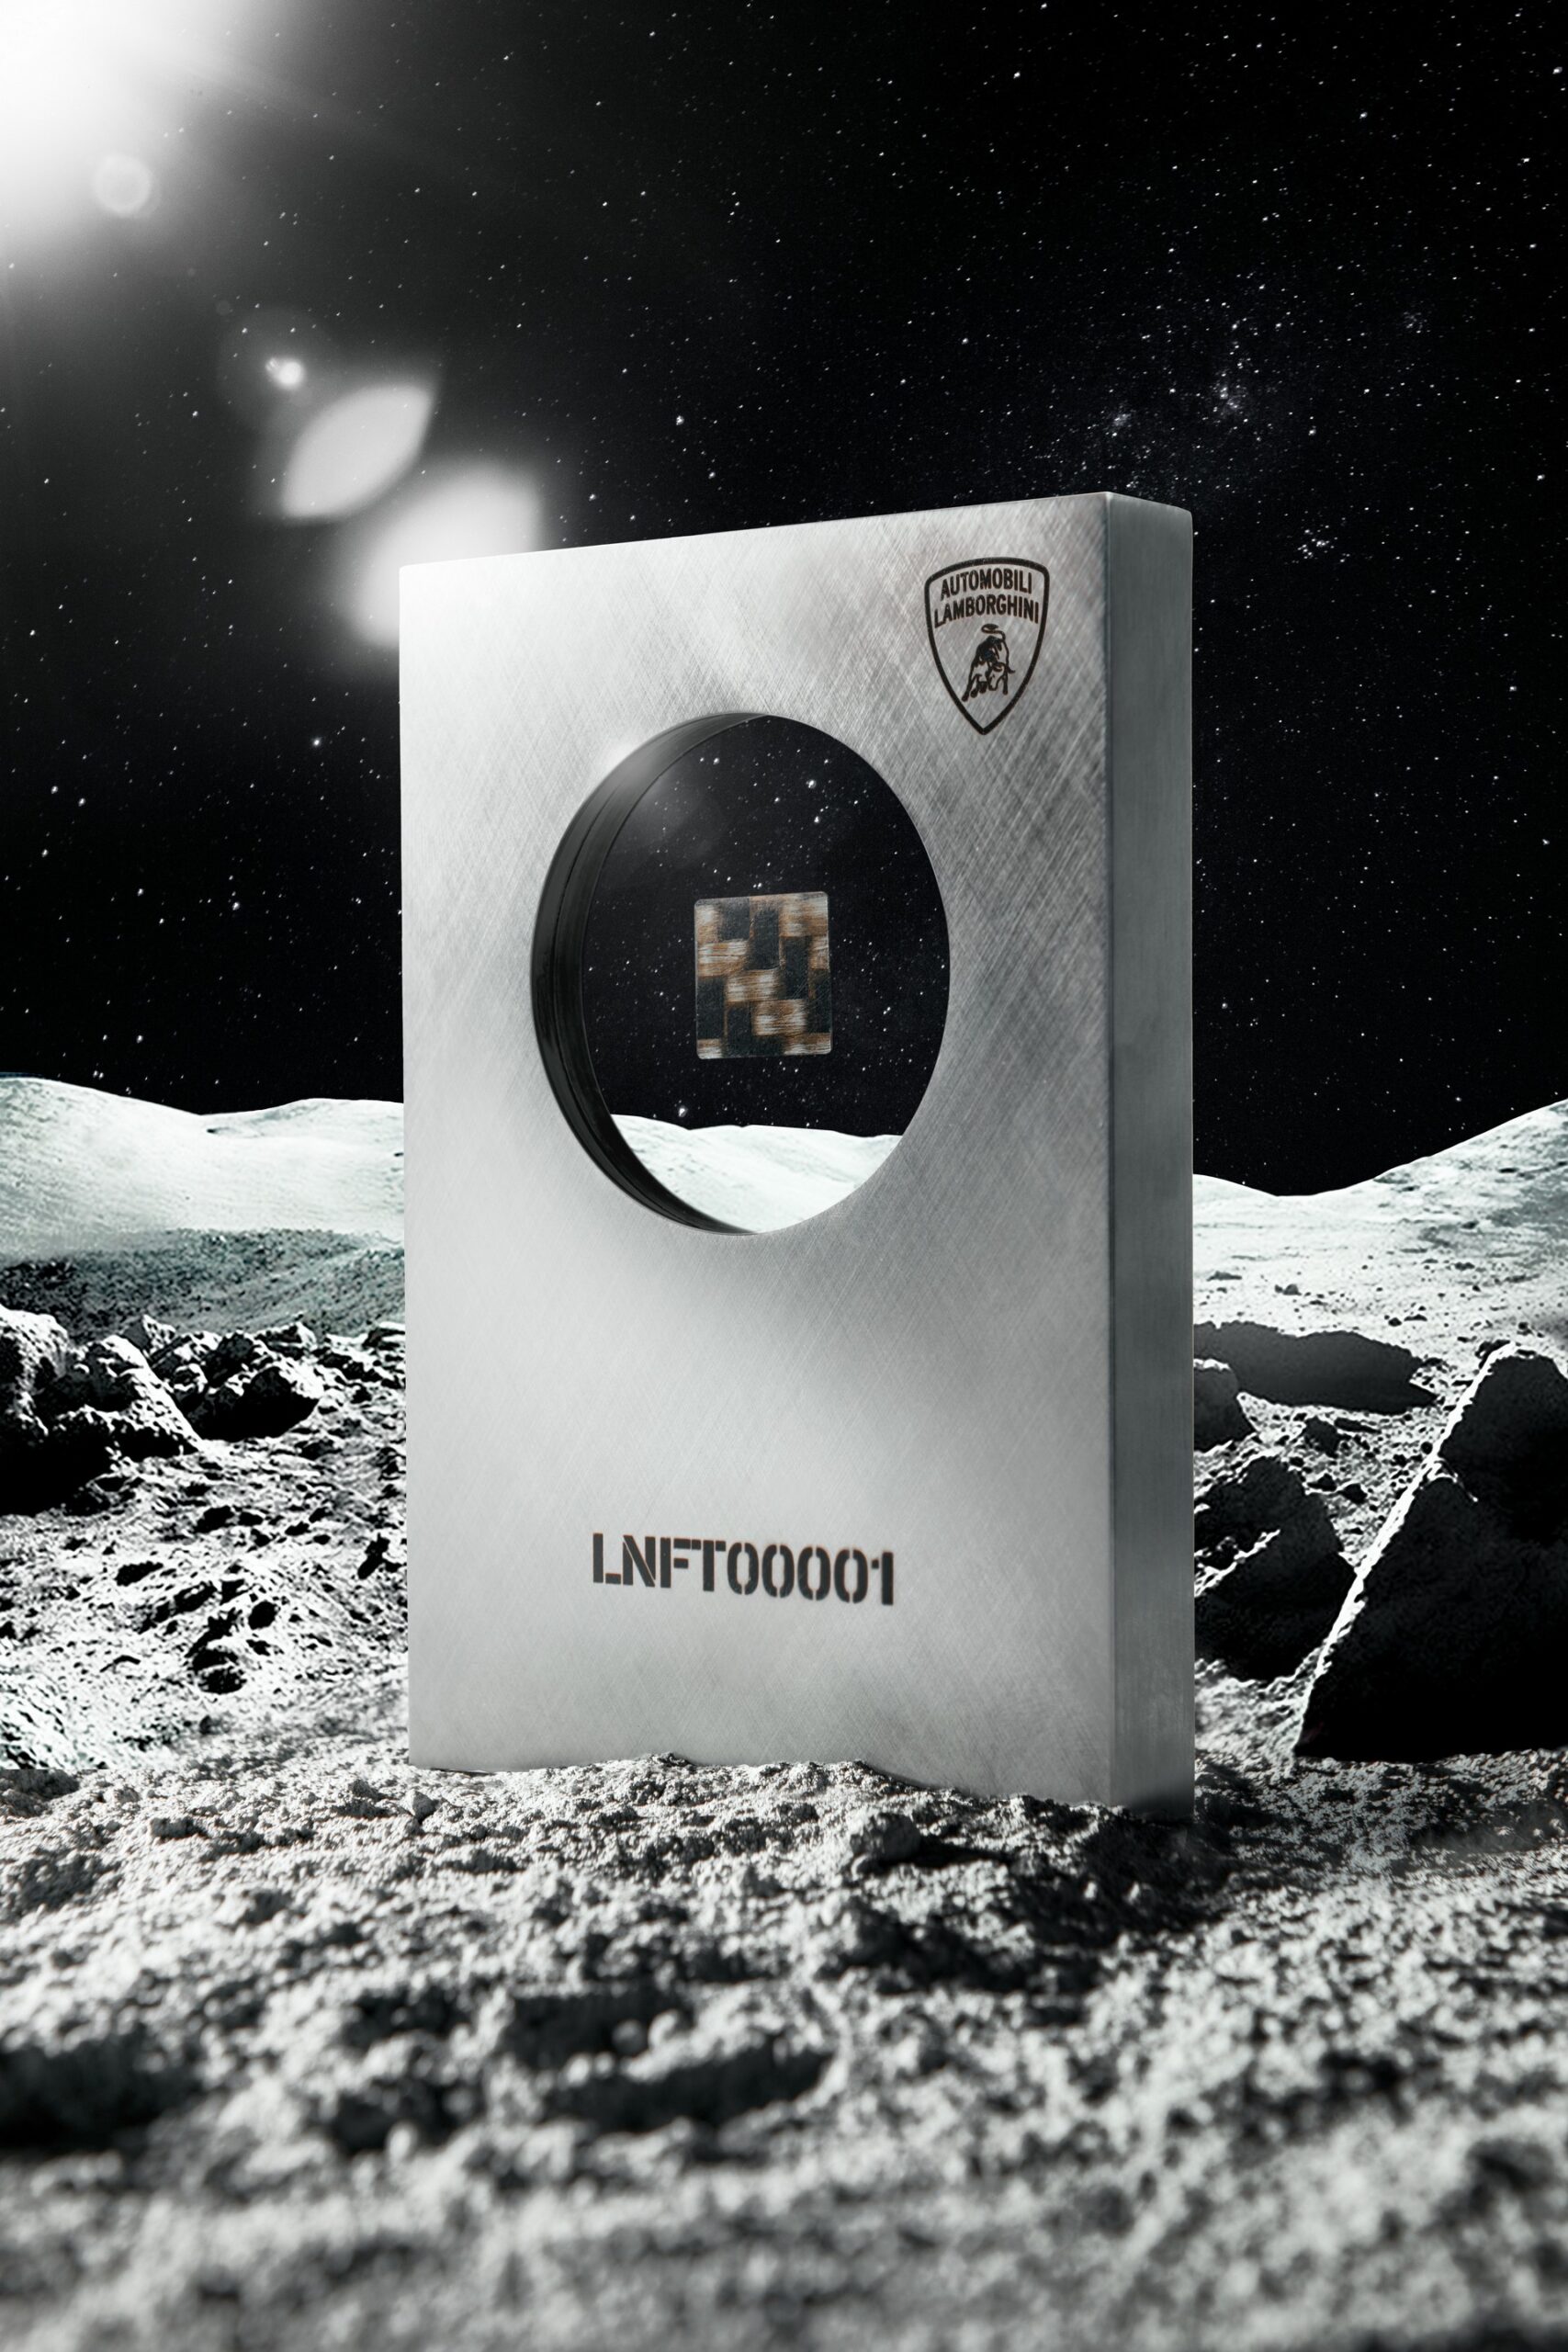 Lamborghini Space Key NFC